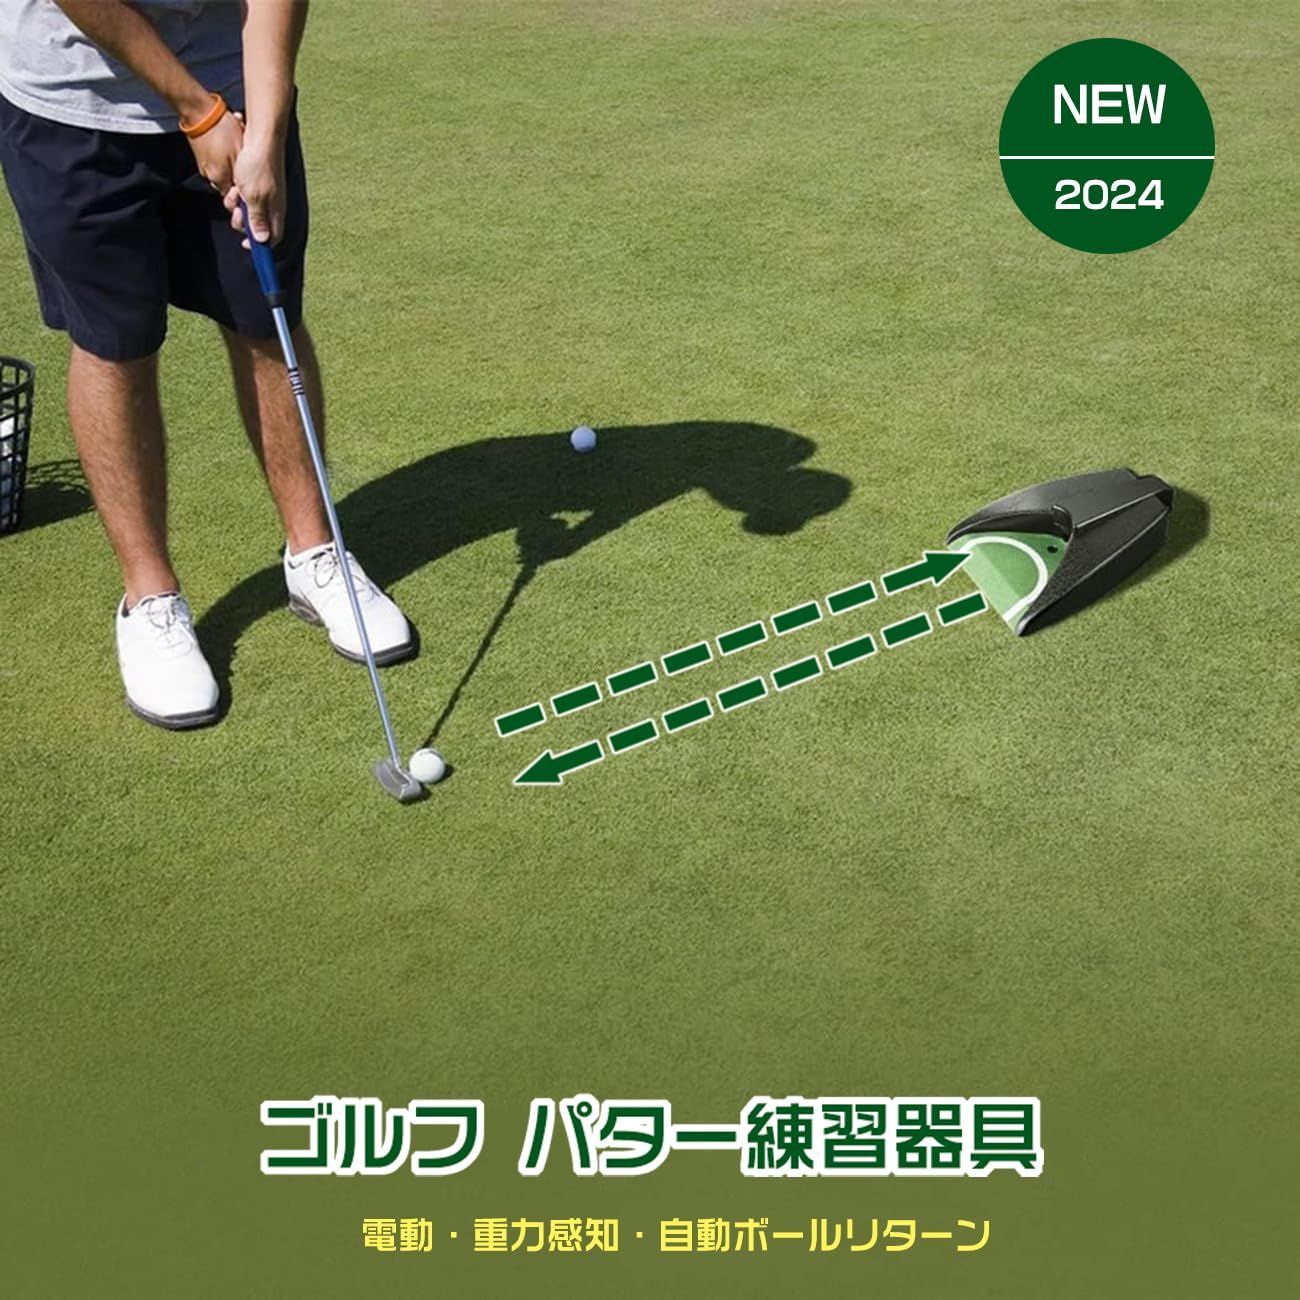 激安価格の 【新品】ゴルフパター練習器具 練習 ゴルフ